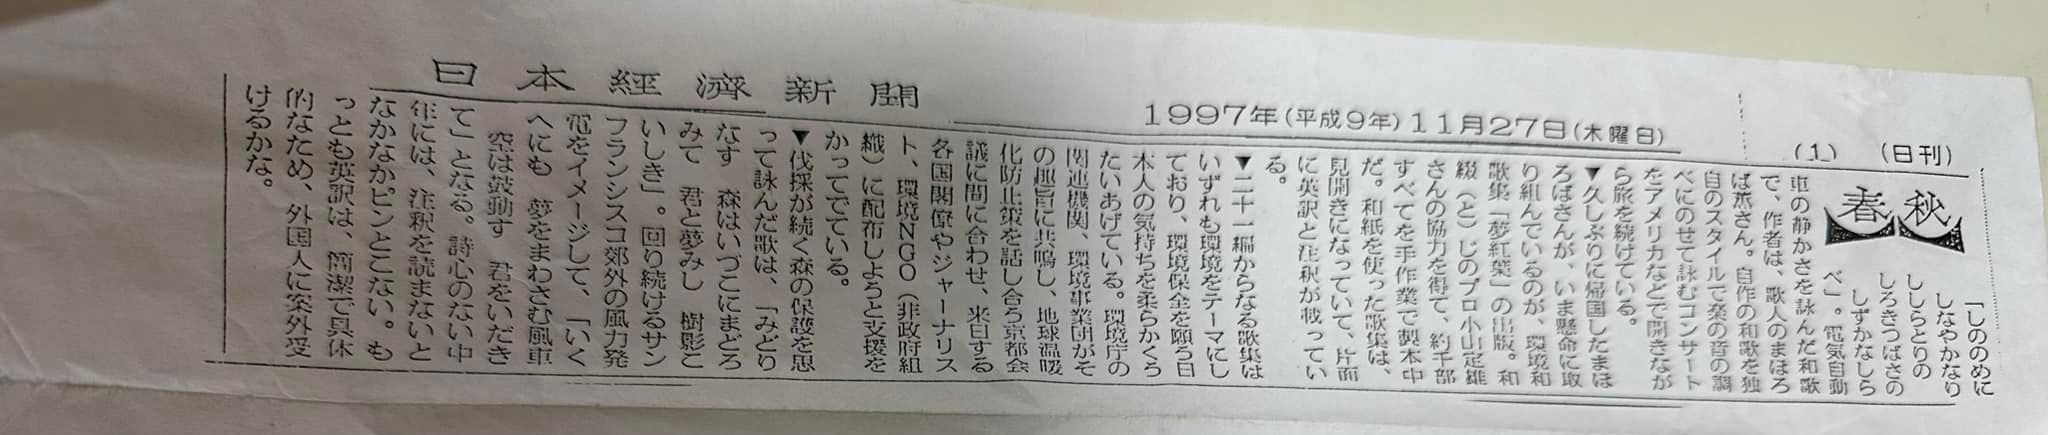 日本経済新聞1997年11月27日歌人まほろば薫掲載